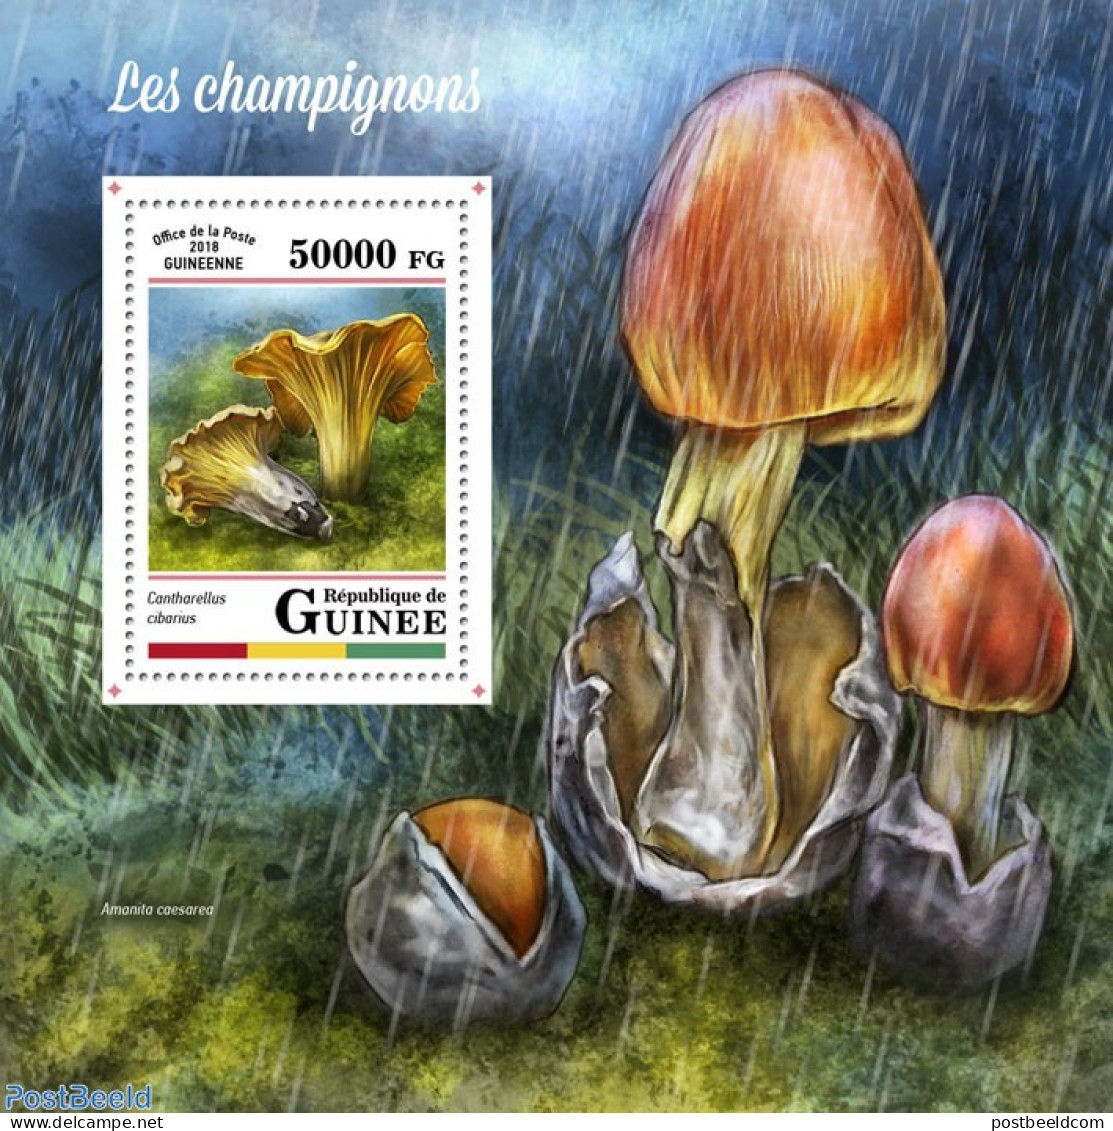 Guinea, Republic 2018 Mushrooms, Mint NH, Nature - Mushrooms - Mushrooms